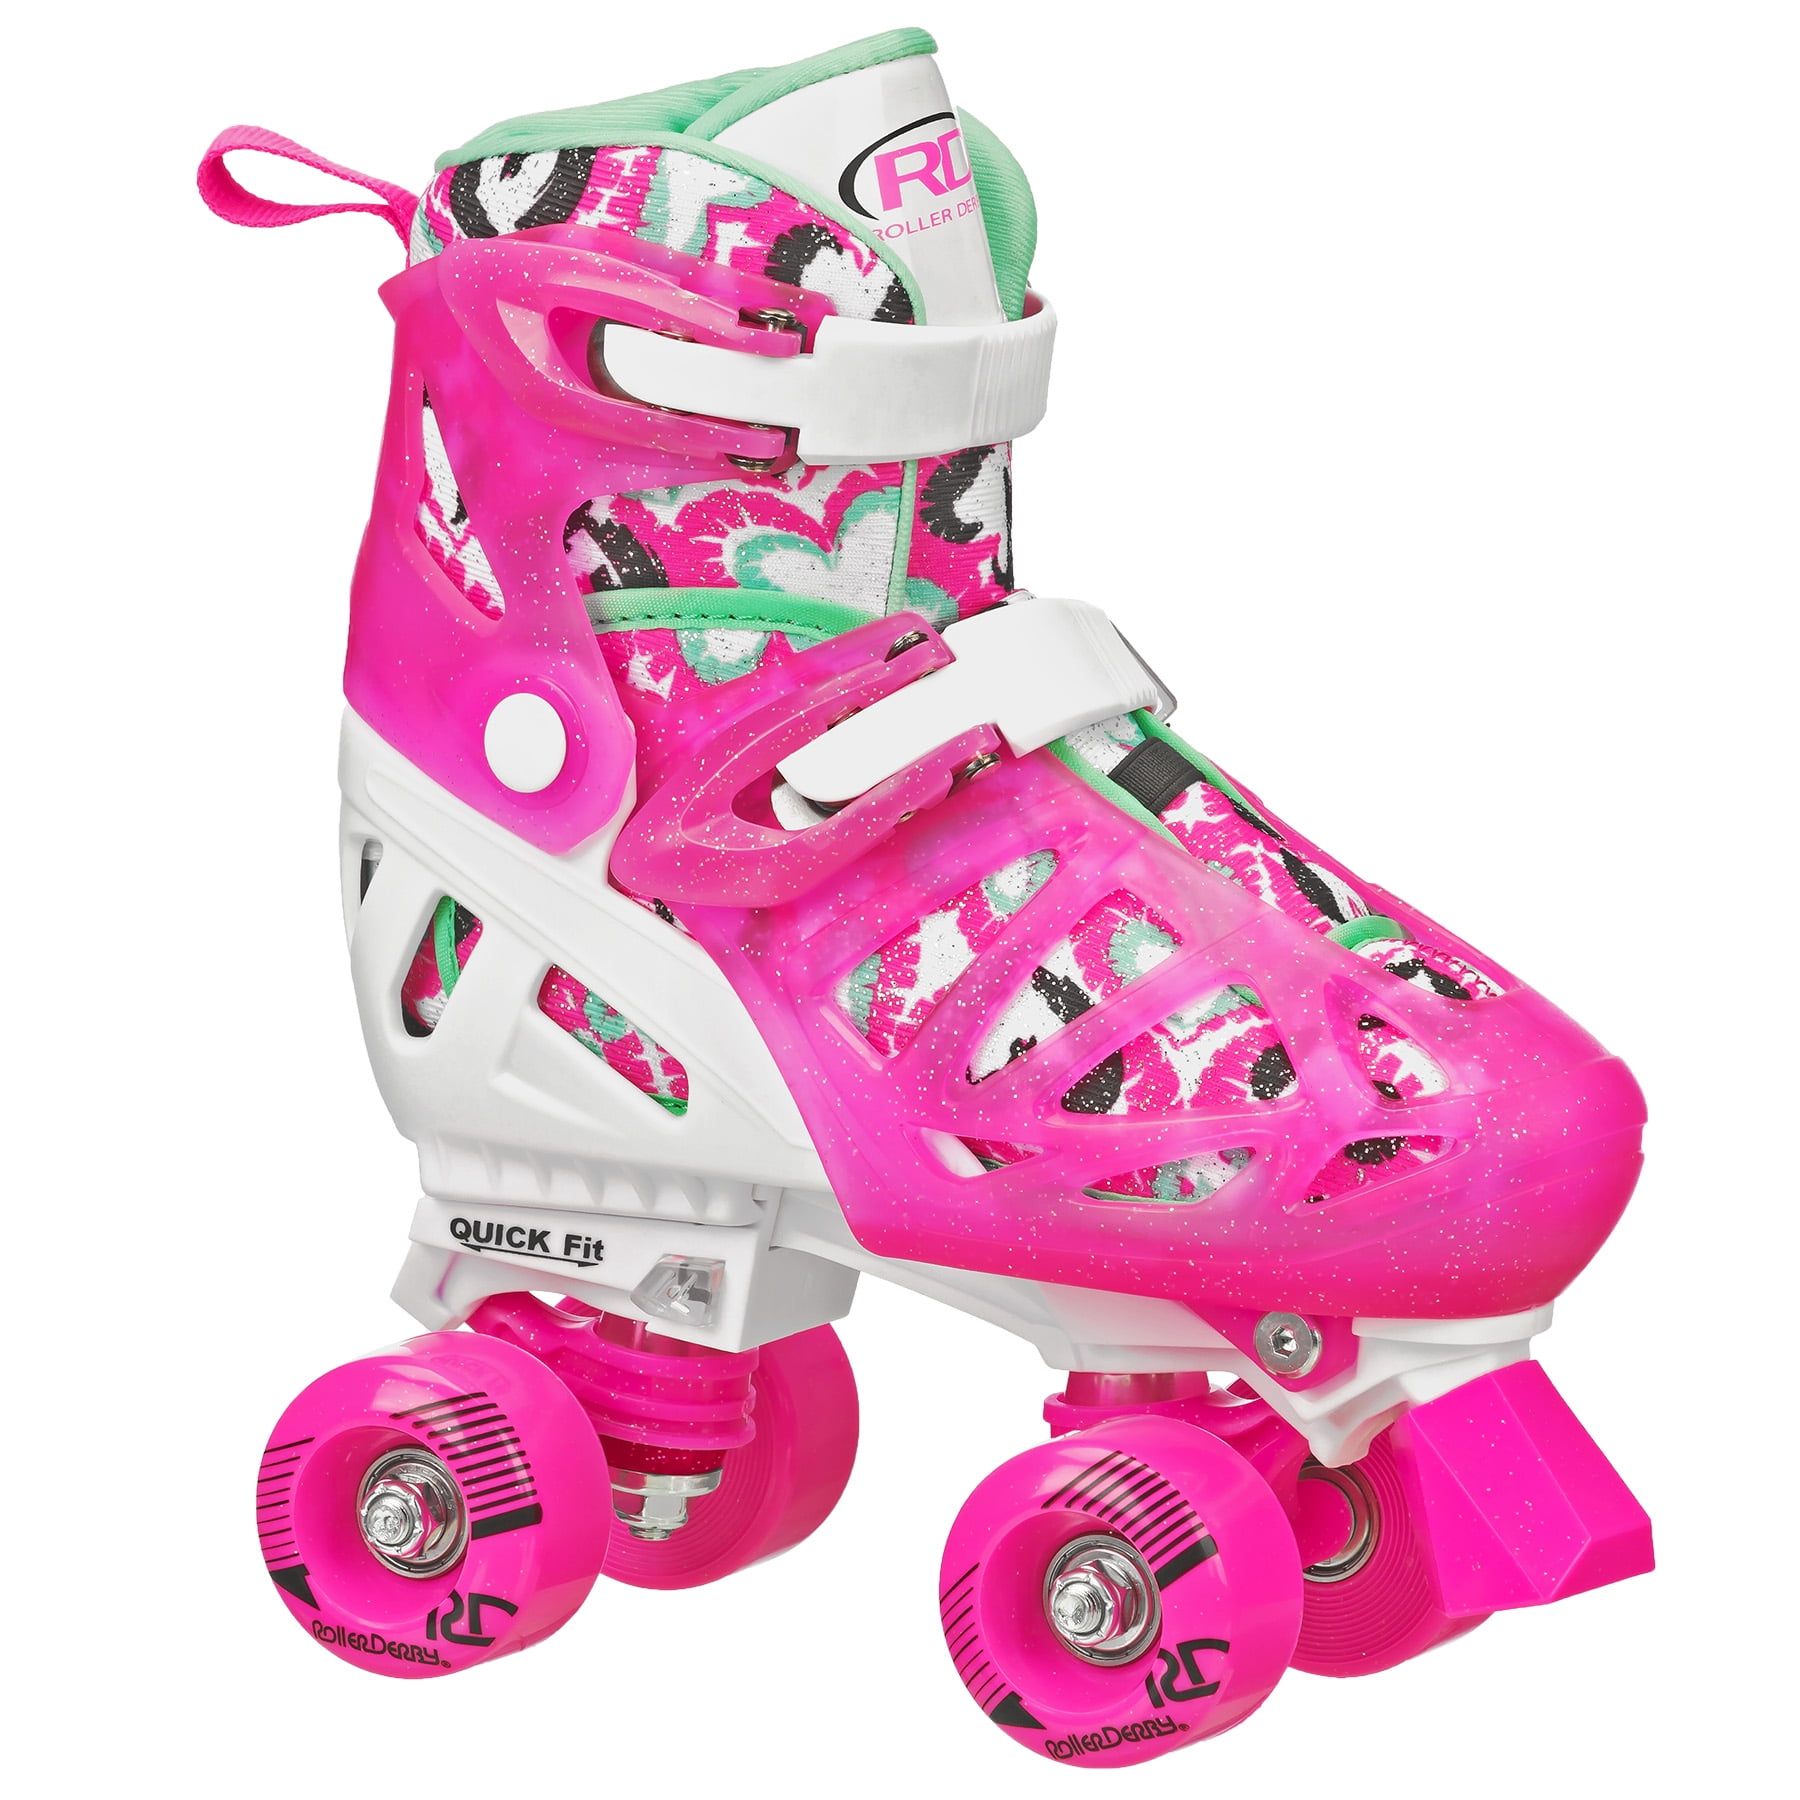 Roller Skates Adjustable Size for Kids/Adult 4 Wheels Children Boys Girls Pink 